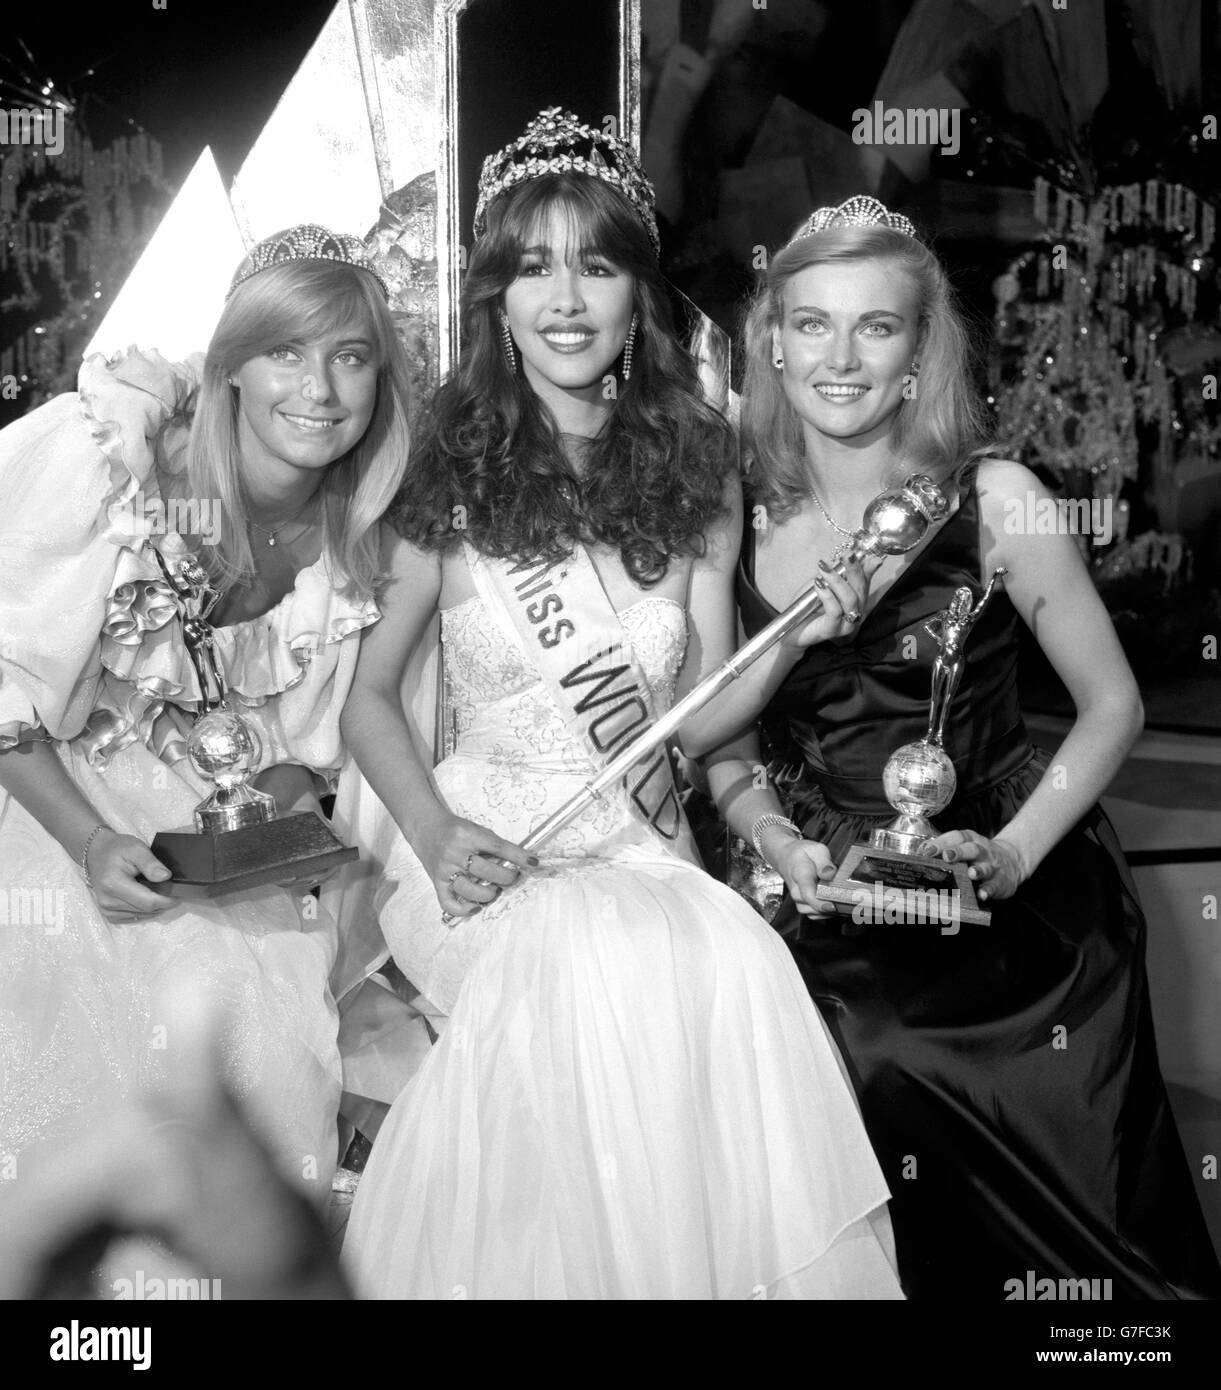 Miss monde 1982, Mariasela Lebron (au centre) de la République dominicaine avec le premier coureur en haut, Miss Finlande, Sari Asphol (à droite) et le deuxième coureur en haut, Miss Royaume-Uni, Della Dolan (à gauche) au couronnement au Royal Albert Hall, Londres. Banque D'Images